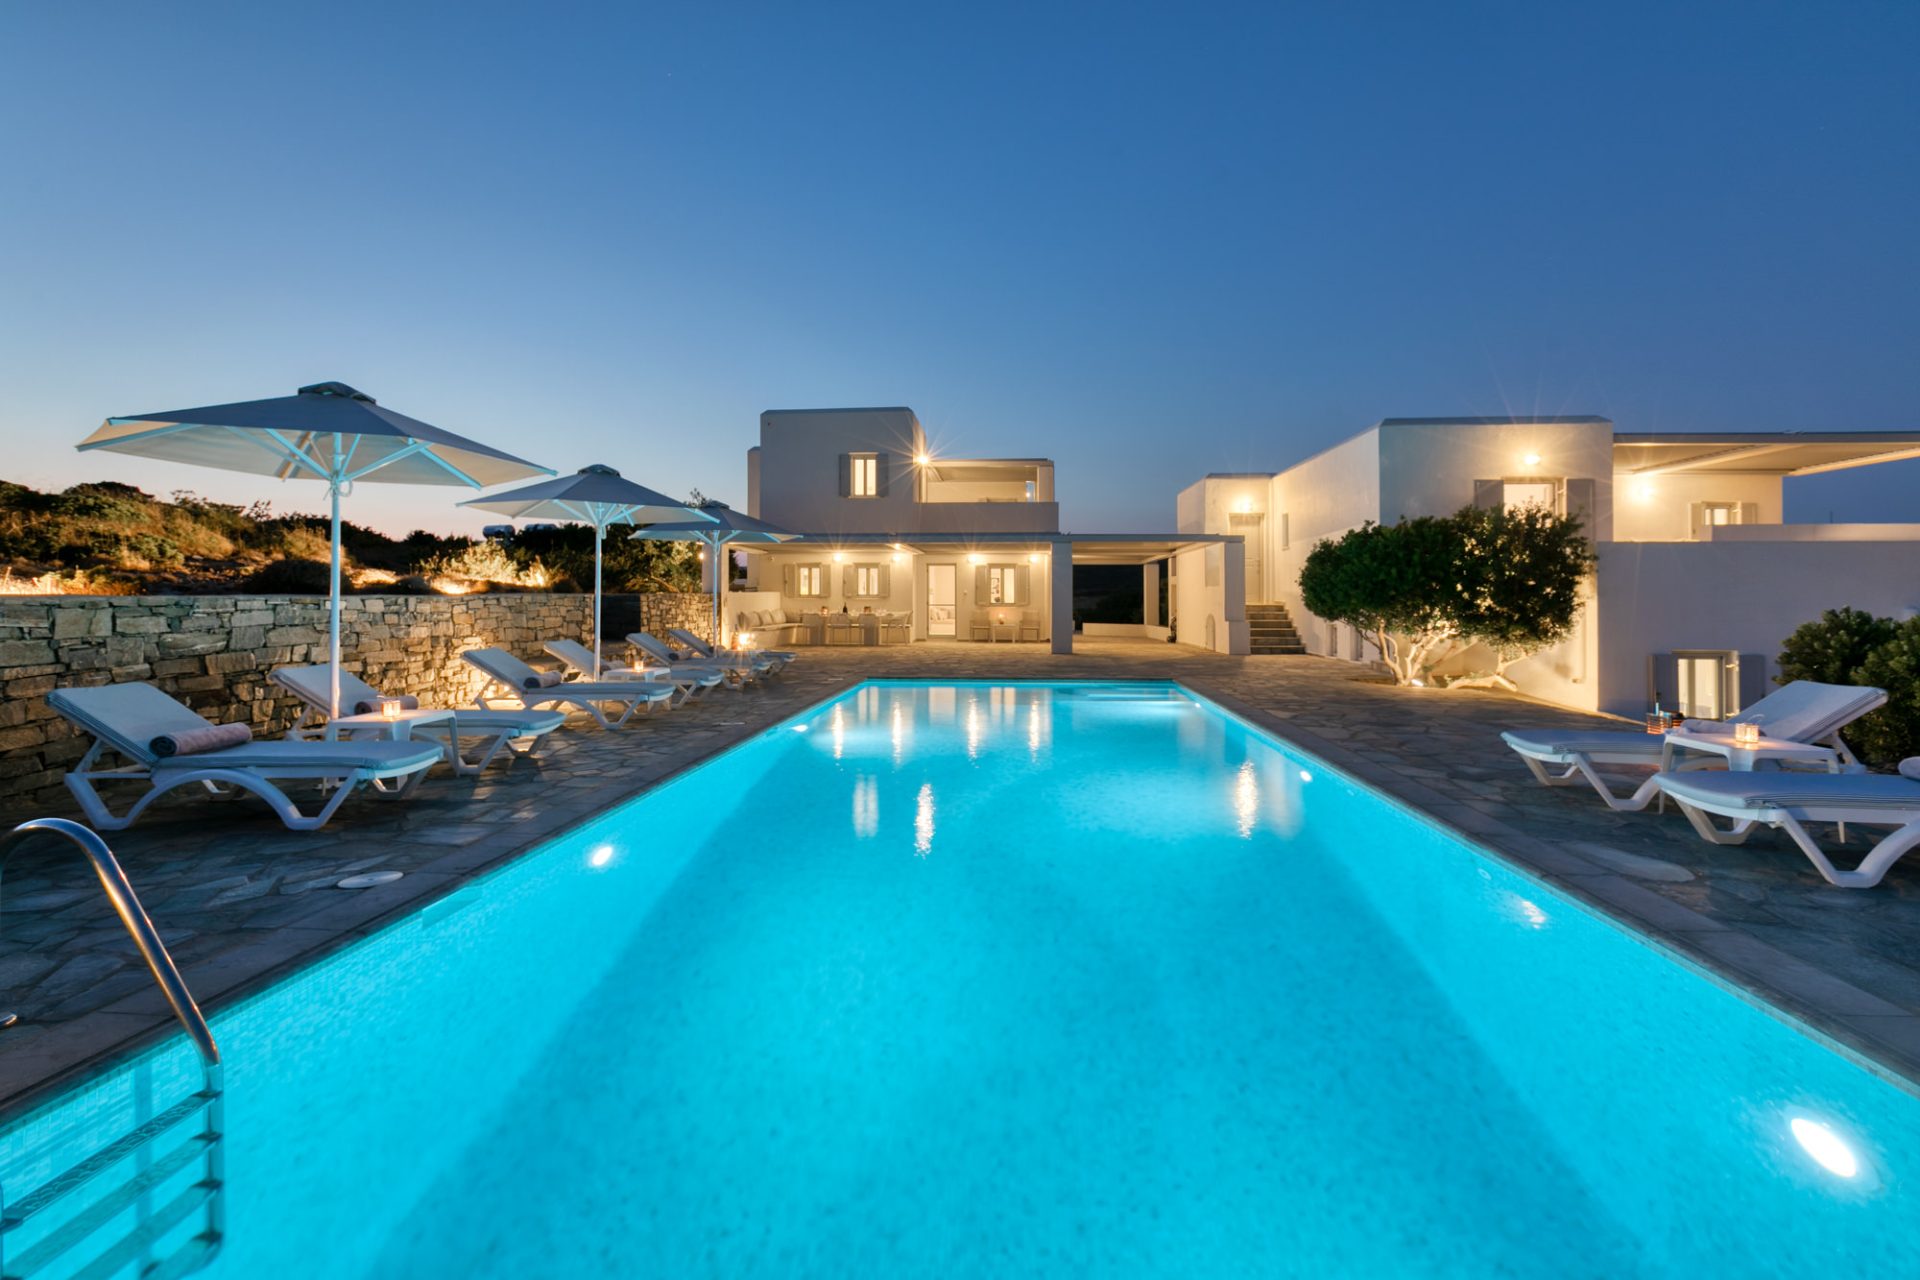 Luxury Hose Villa Vega in Paros Island